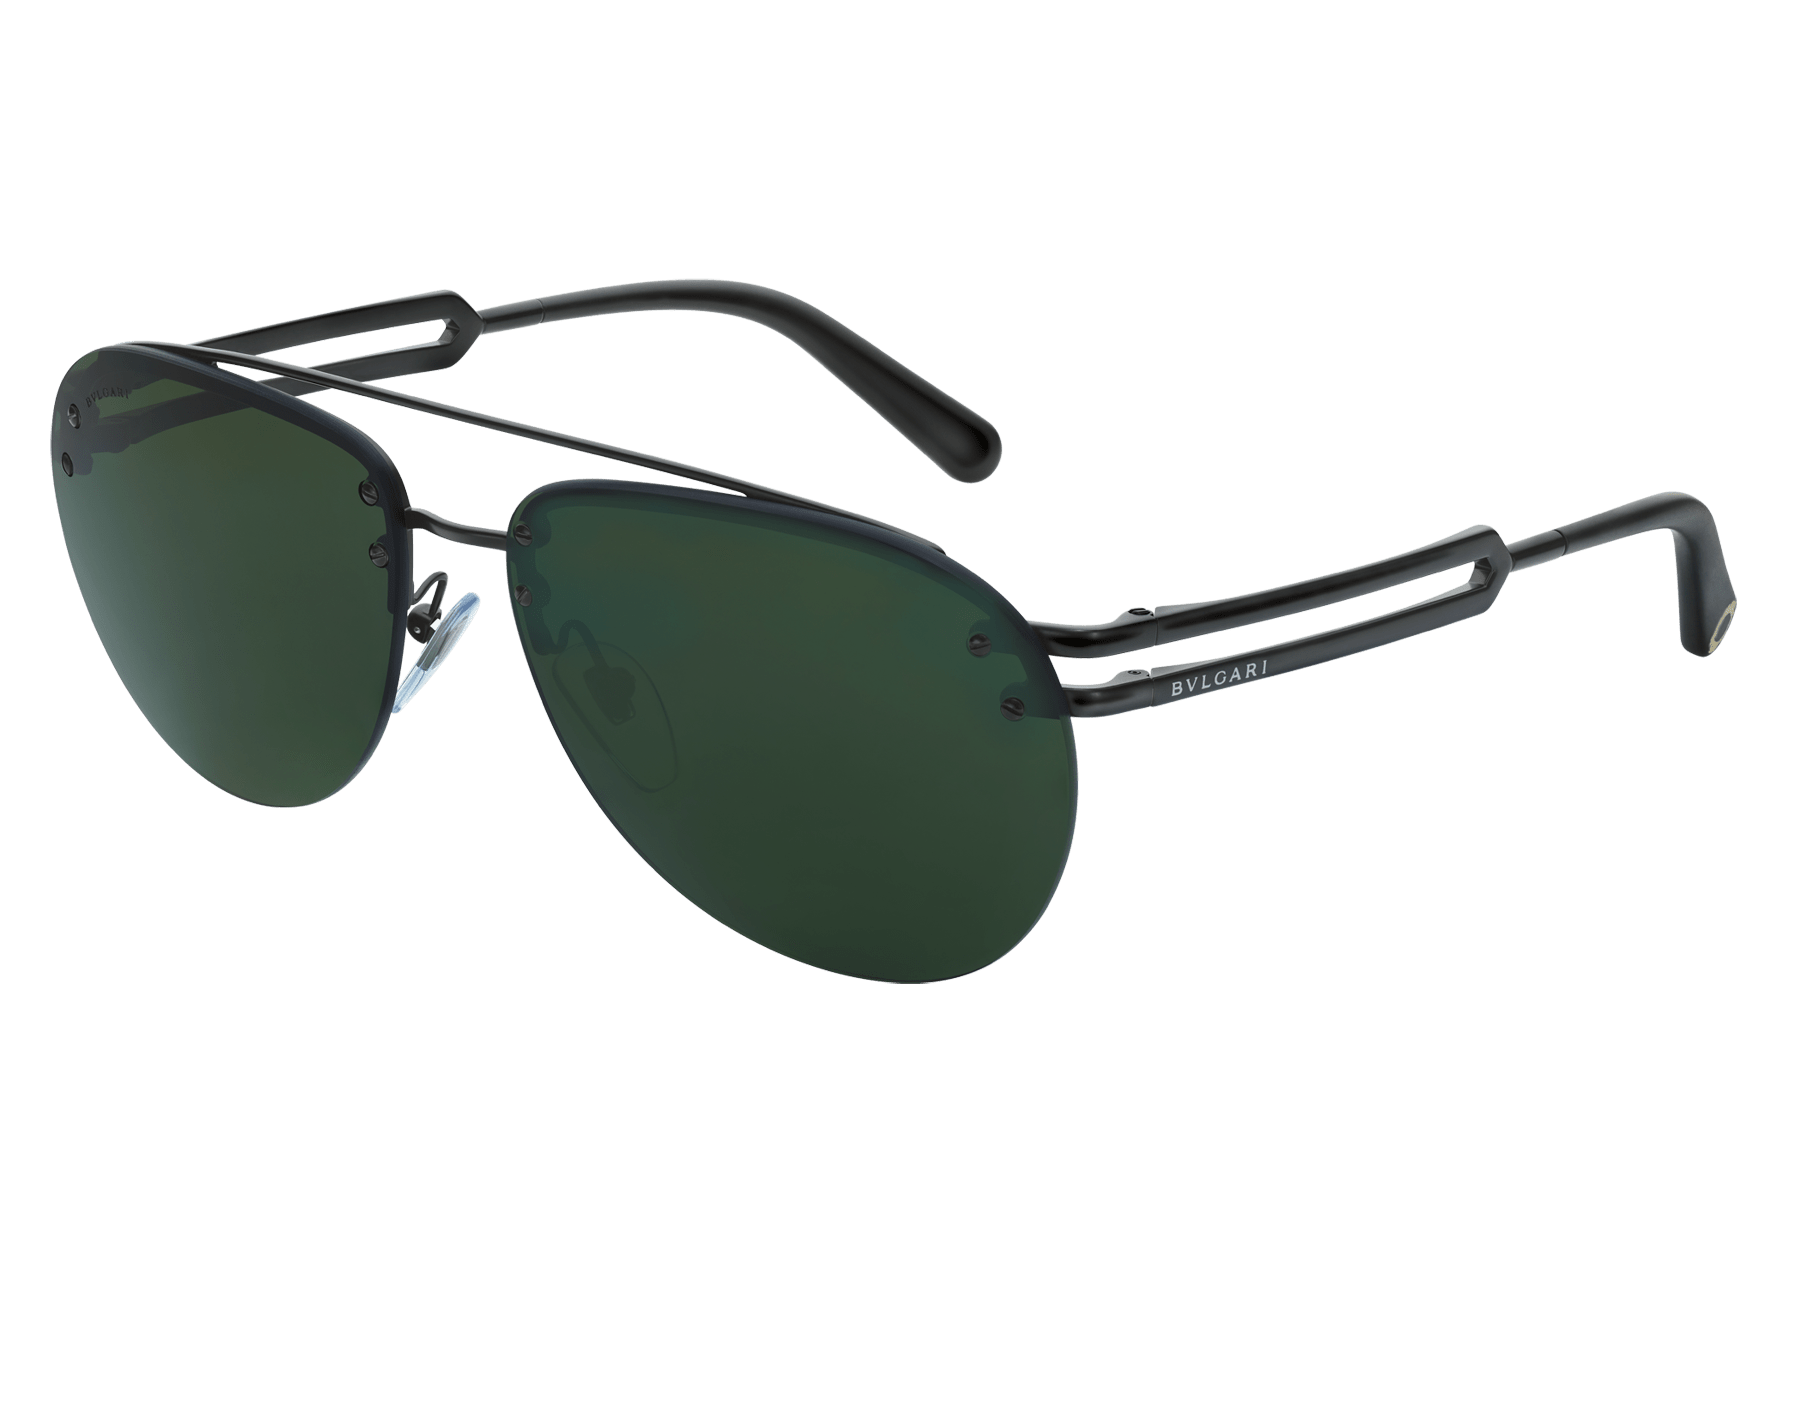 Bvlgari Bvlgari Sonnenbrille aus Metall in Pilotenform mit Doppelsteg. 904044 image 1